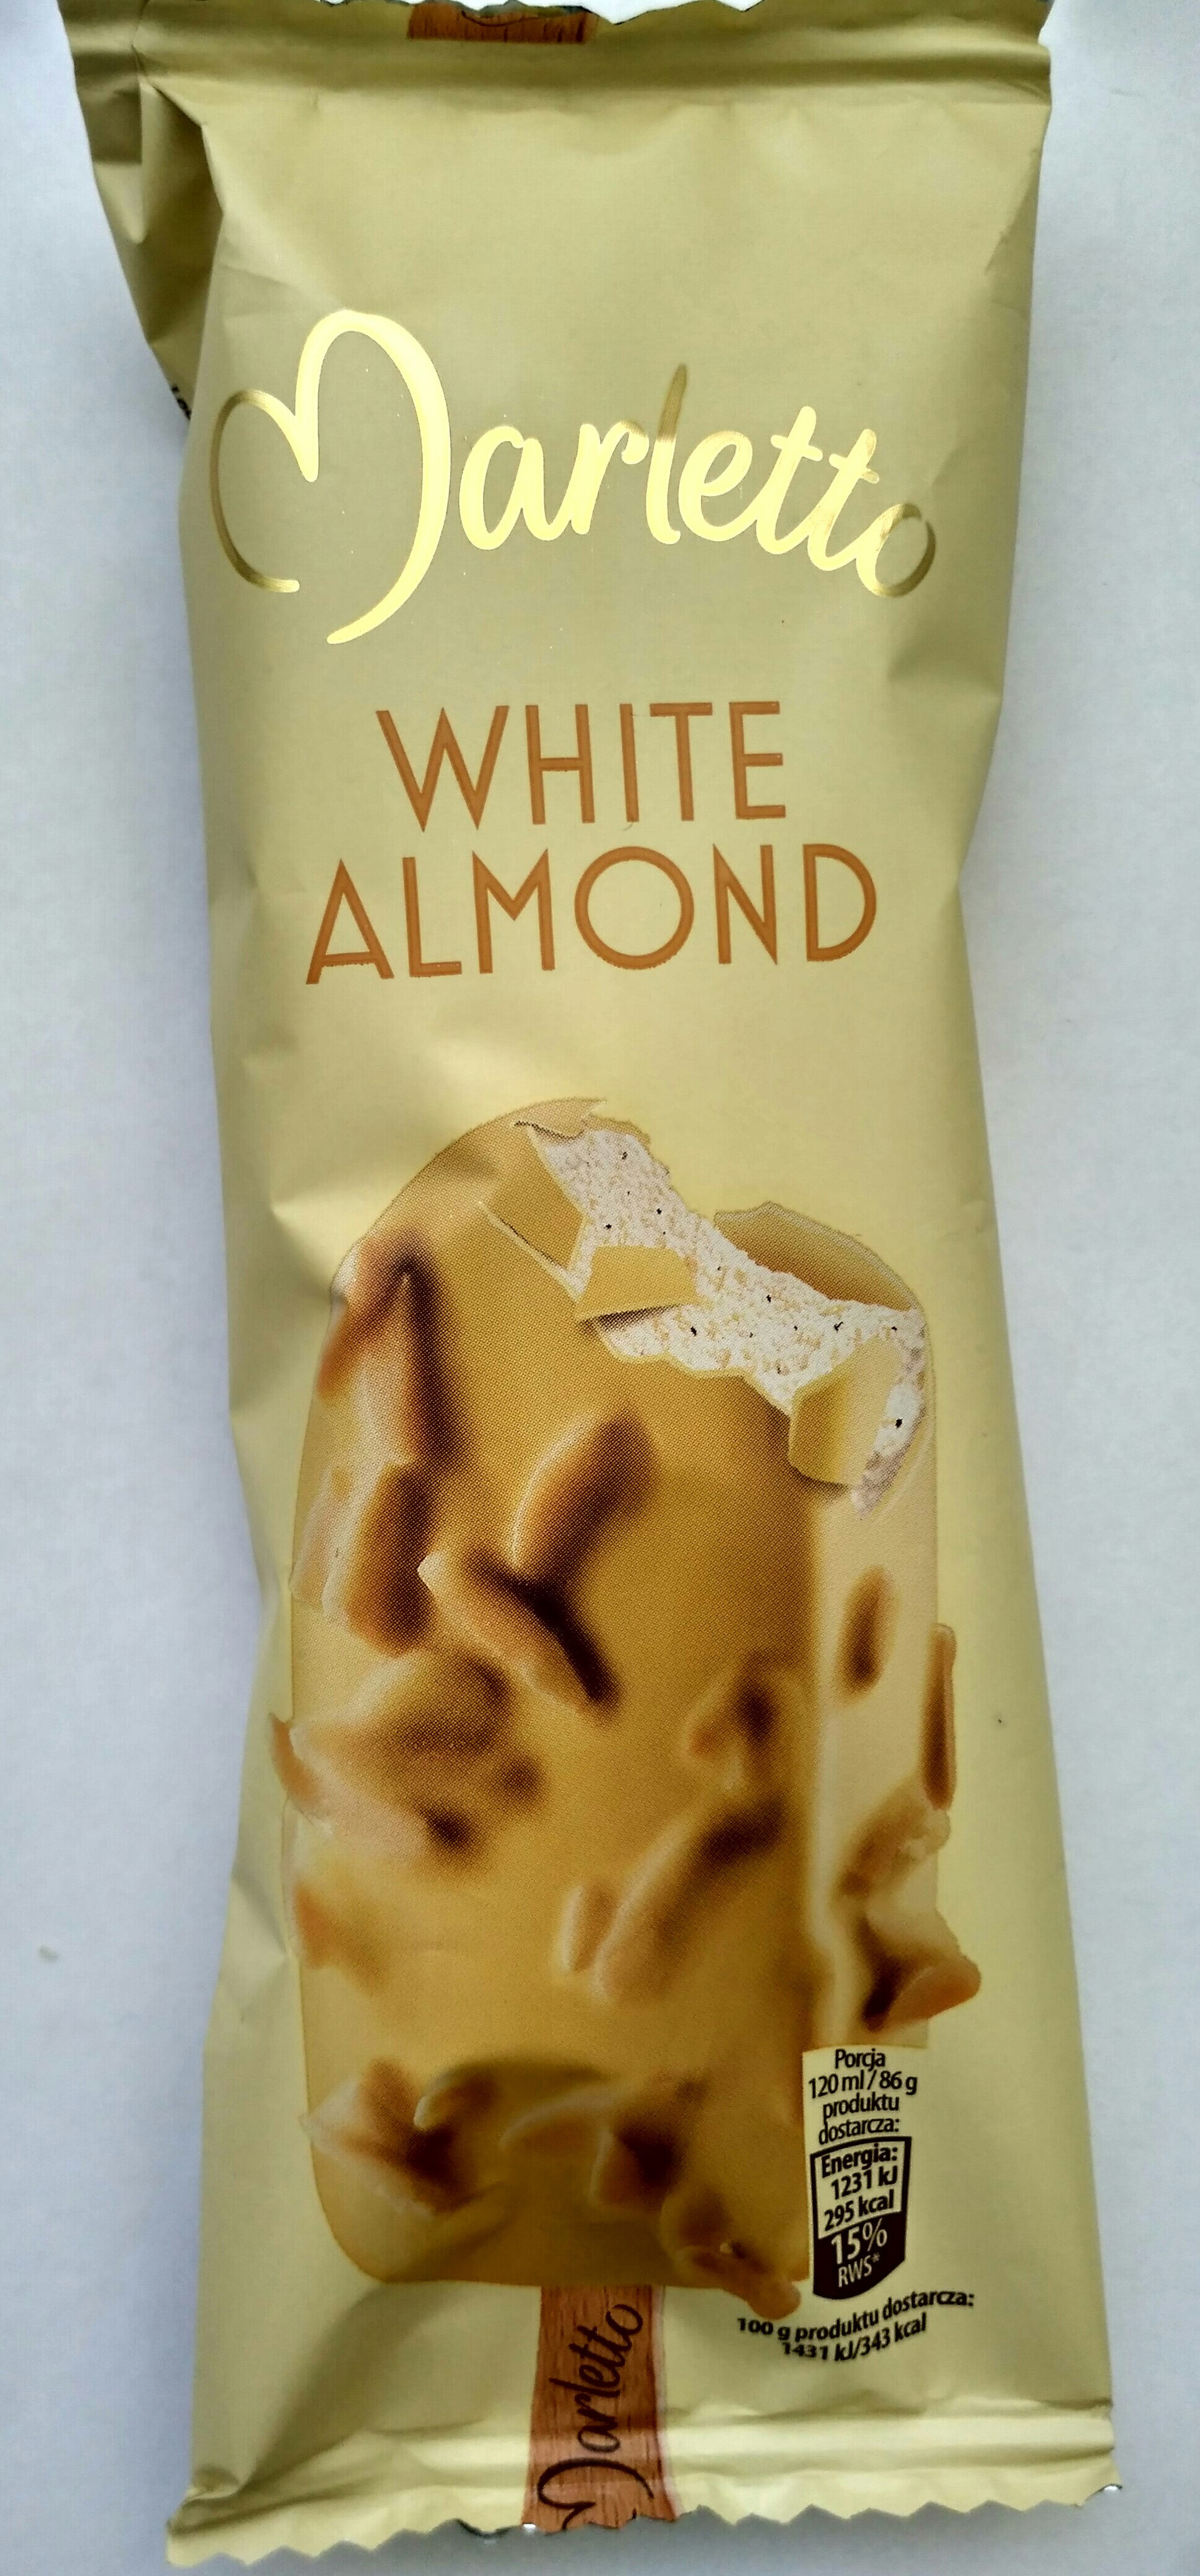 Marletto White Almond - Produkt